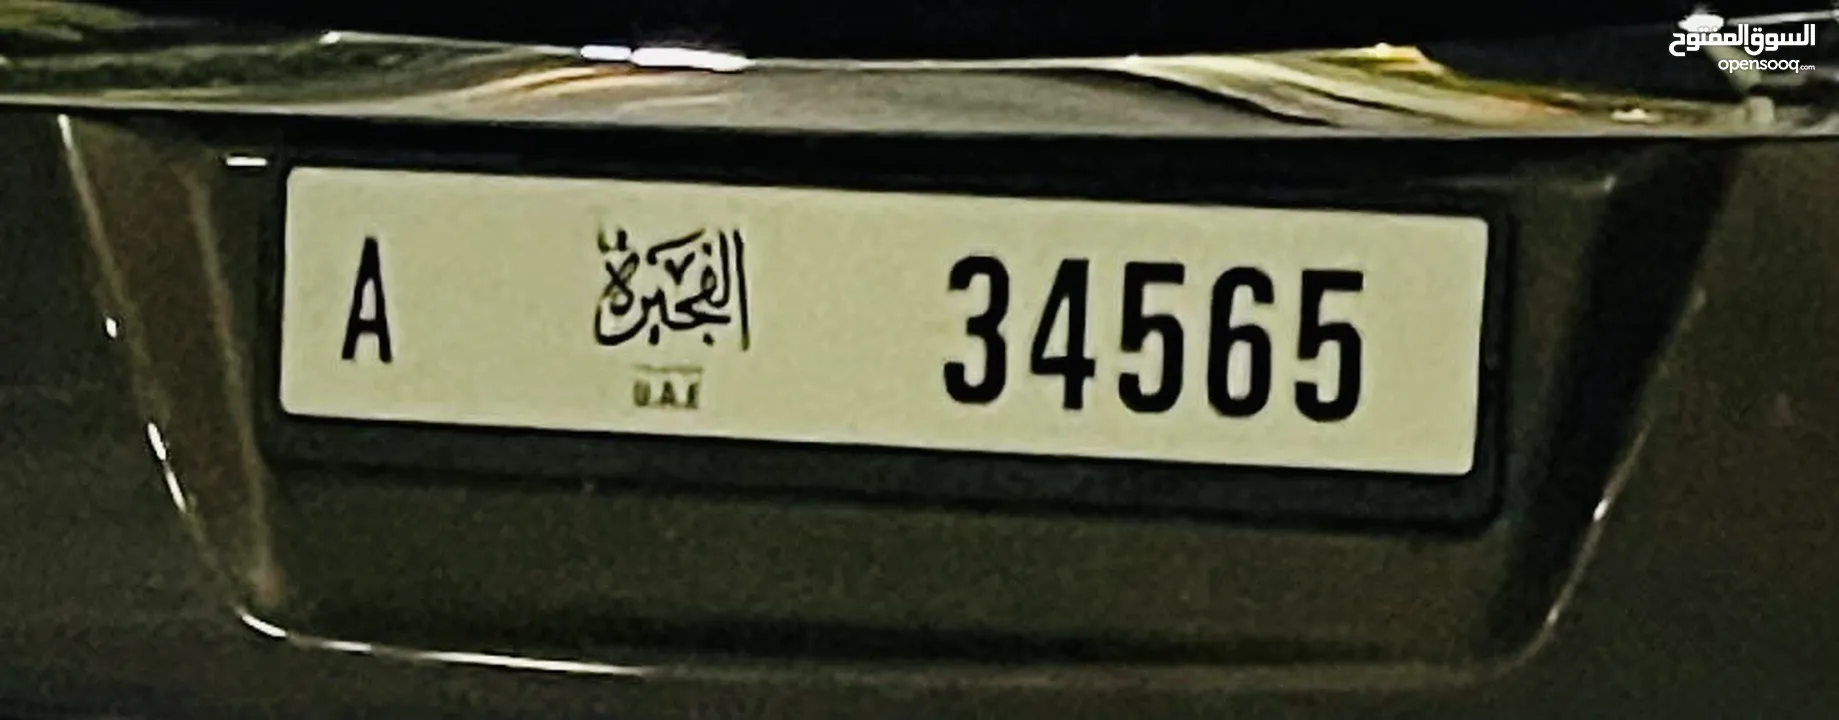 رقم الفجيرة A 34565 Fujairah plate number A 34565